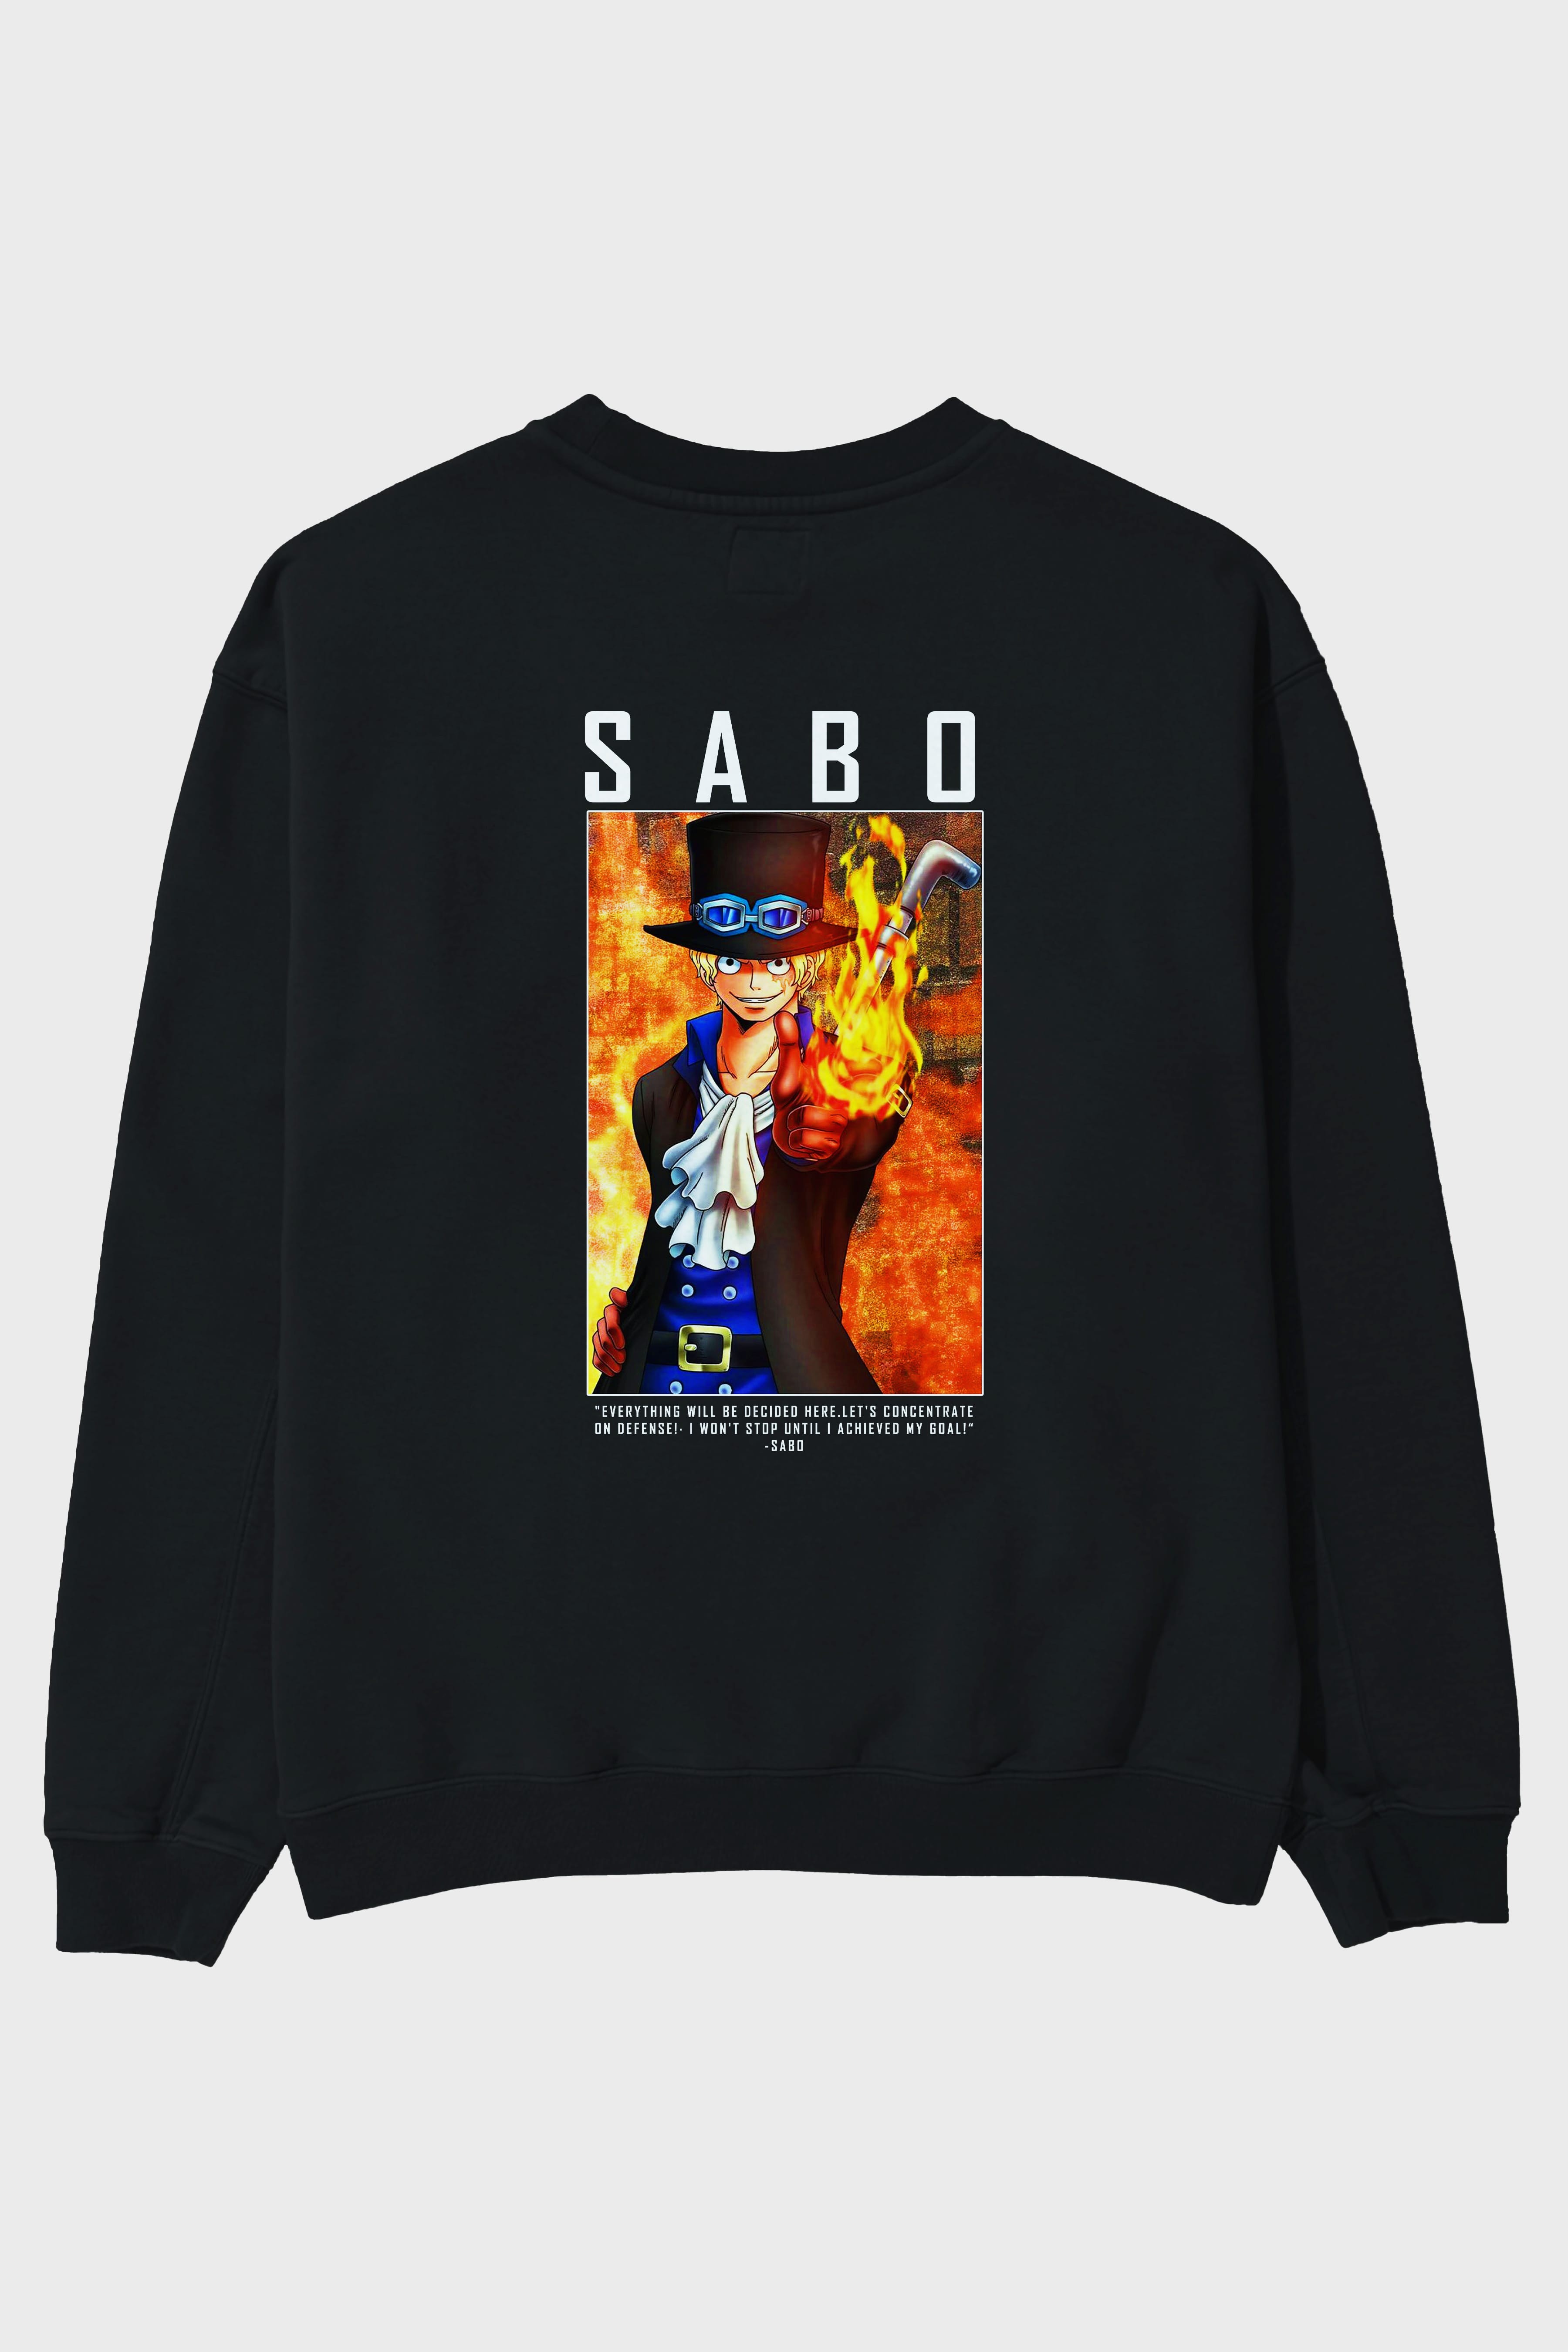 Sabo Arka Baskılı Anime Oversize Sweatshirt Erkek Kadın Unisex